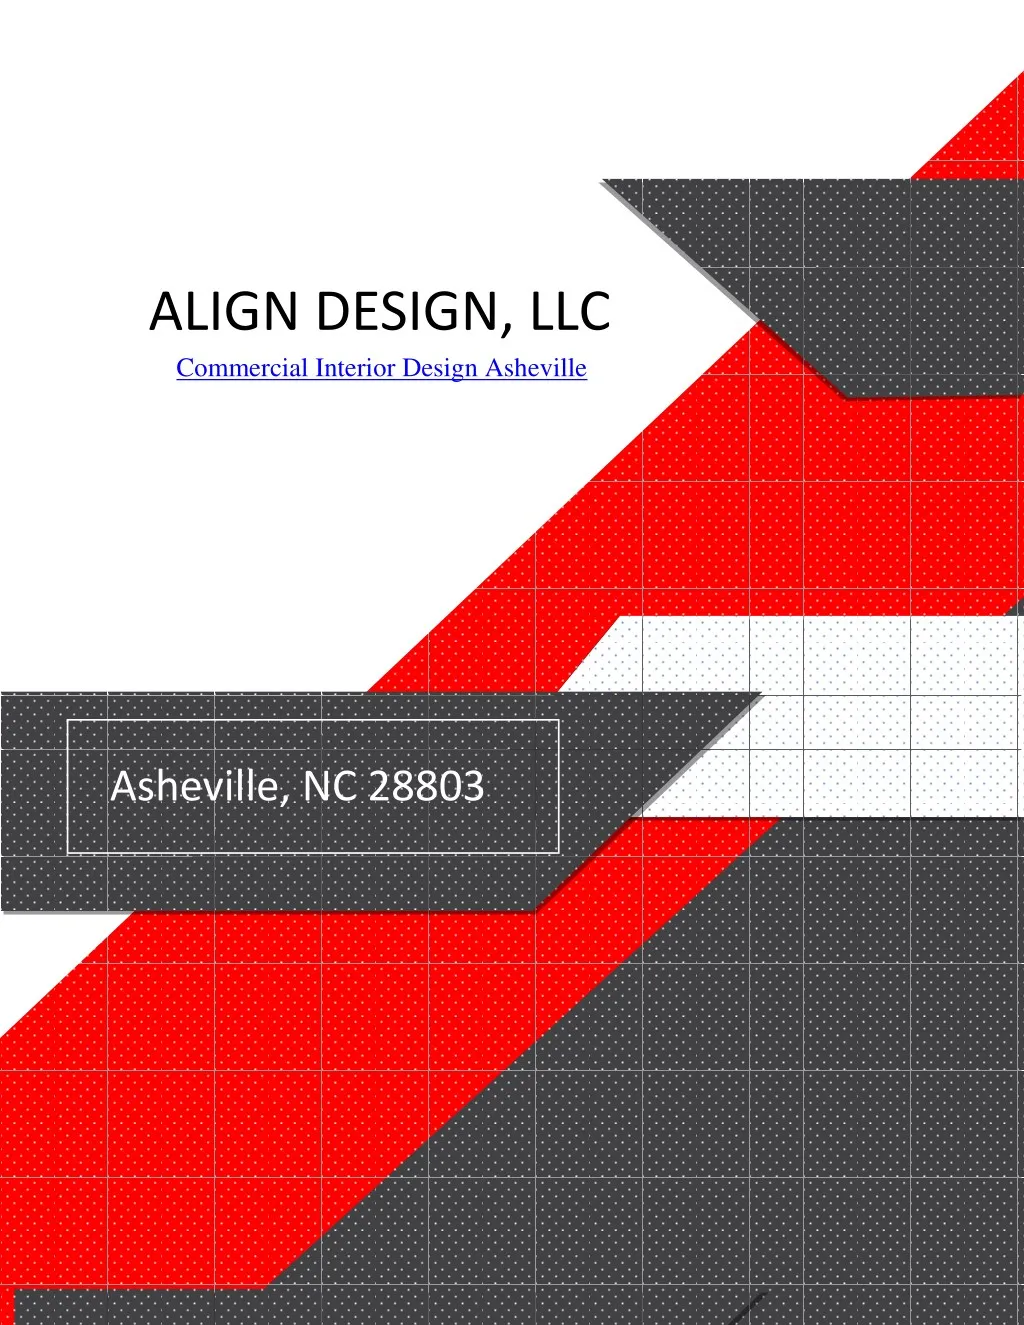 align design llc commercial interior design